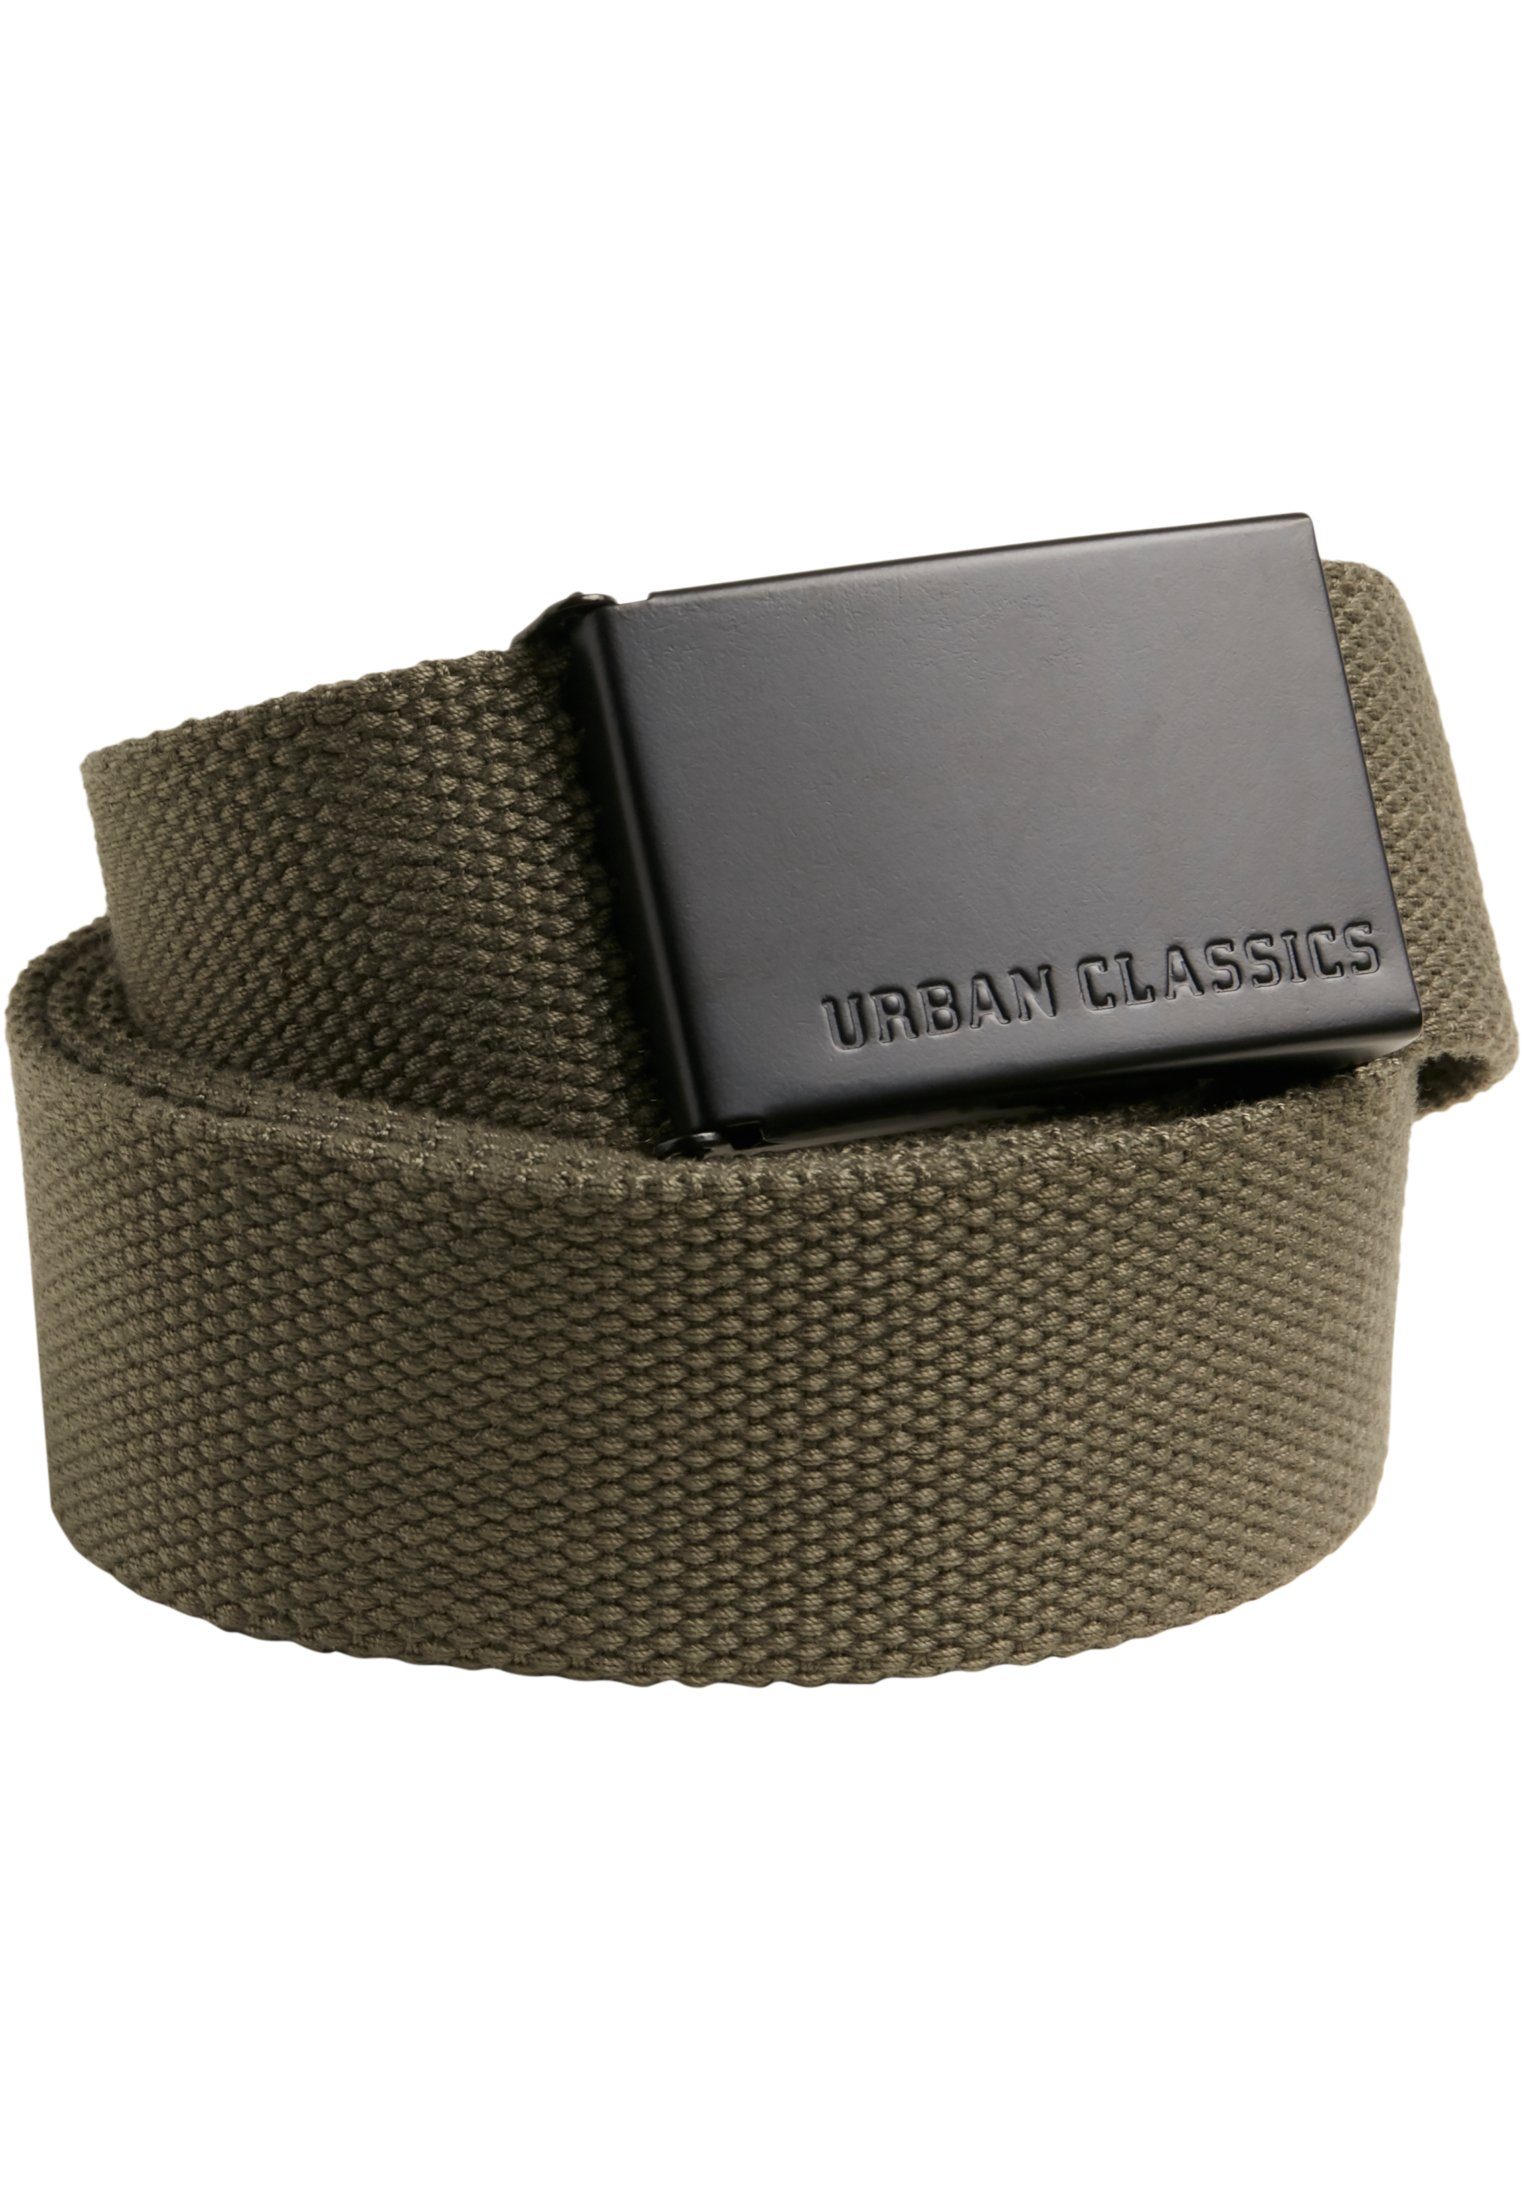 CLASSICS olive-black Hüftgürtel Belts Accessoires Canvas URBAN